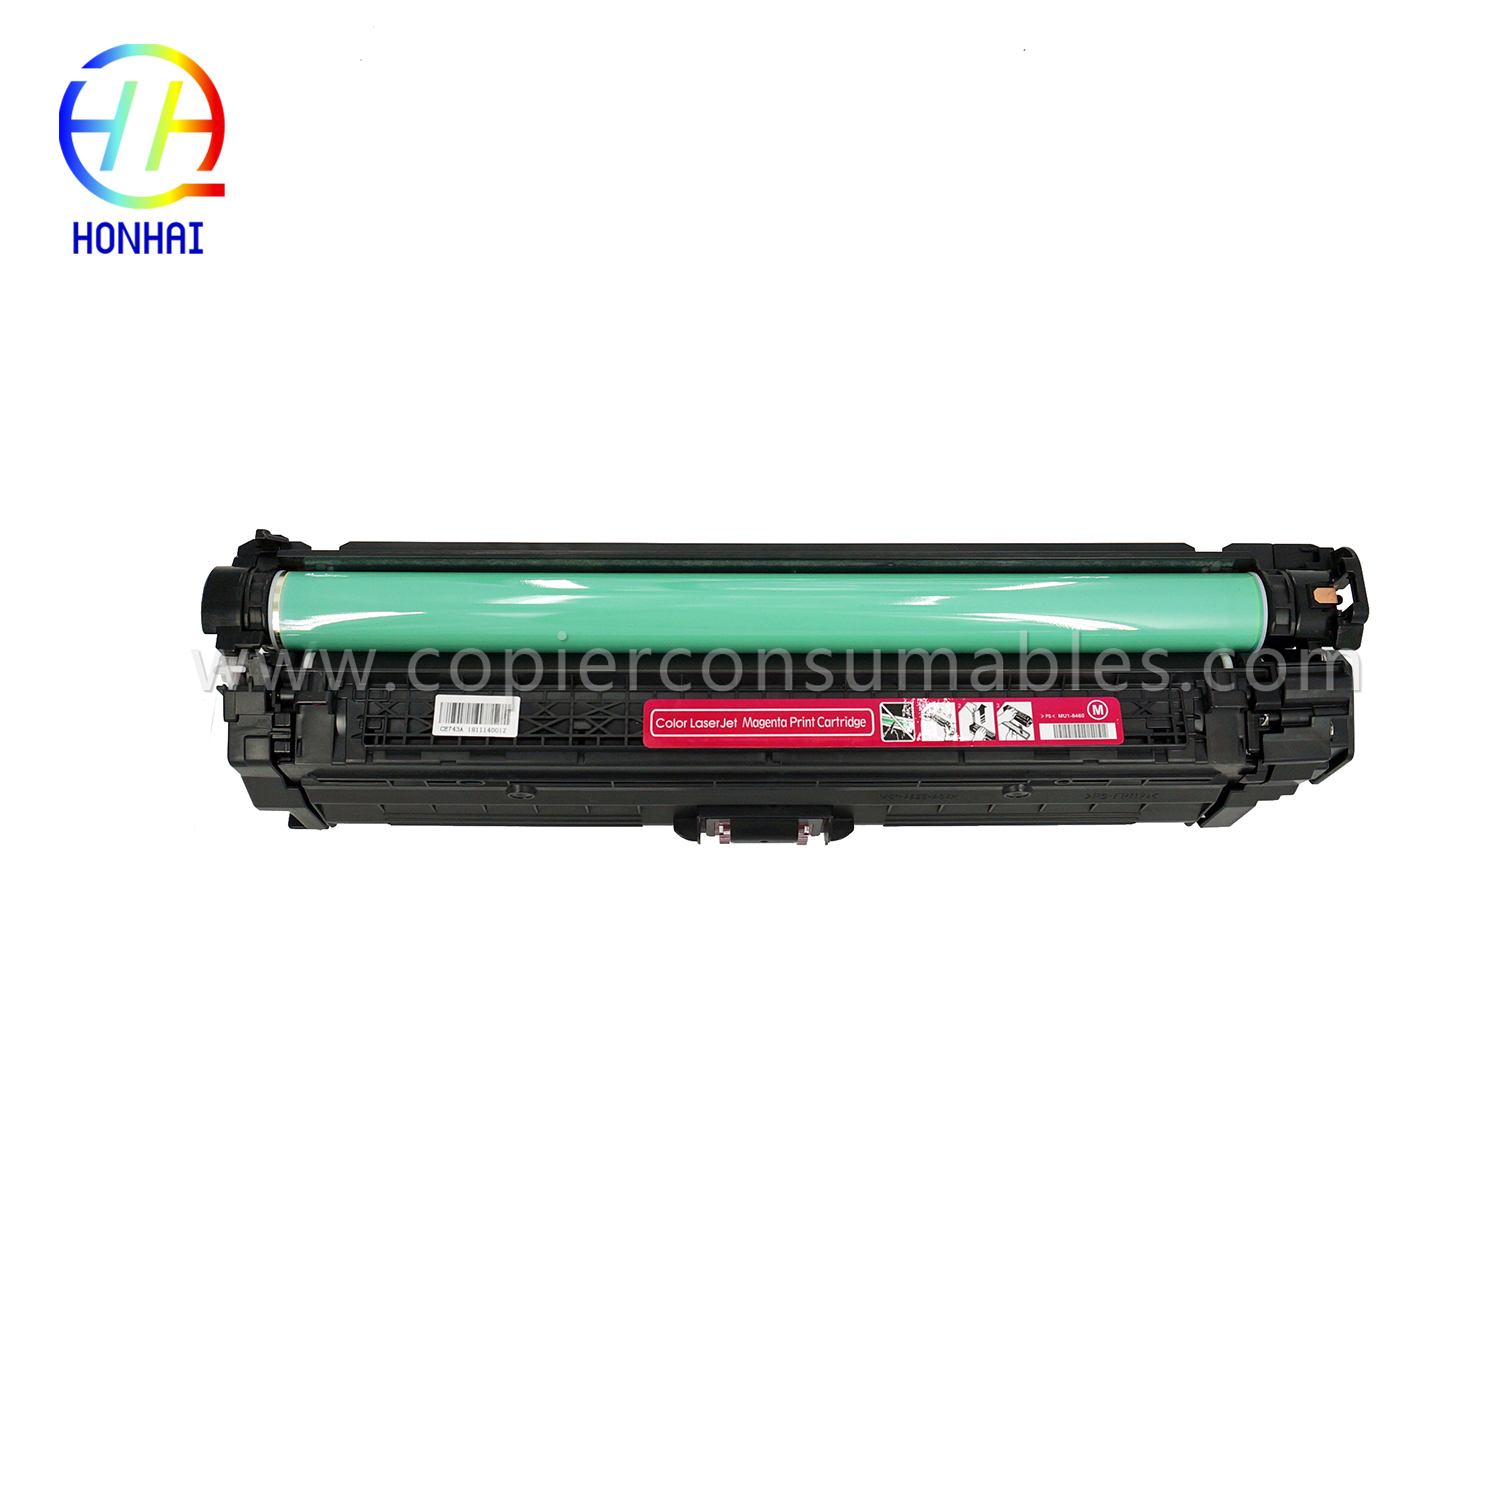 Toner Cartridge HP Color LaserJet Pro CP5025 CP5220 CP5225 (CE743A 307A) (4) 拷贝